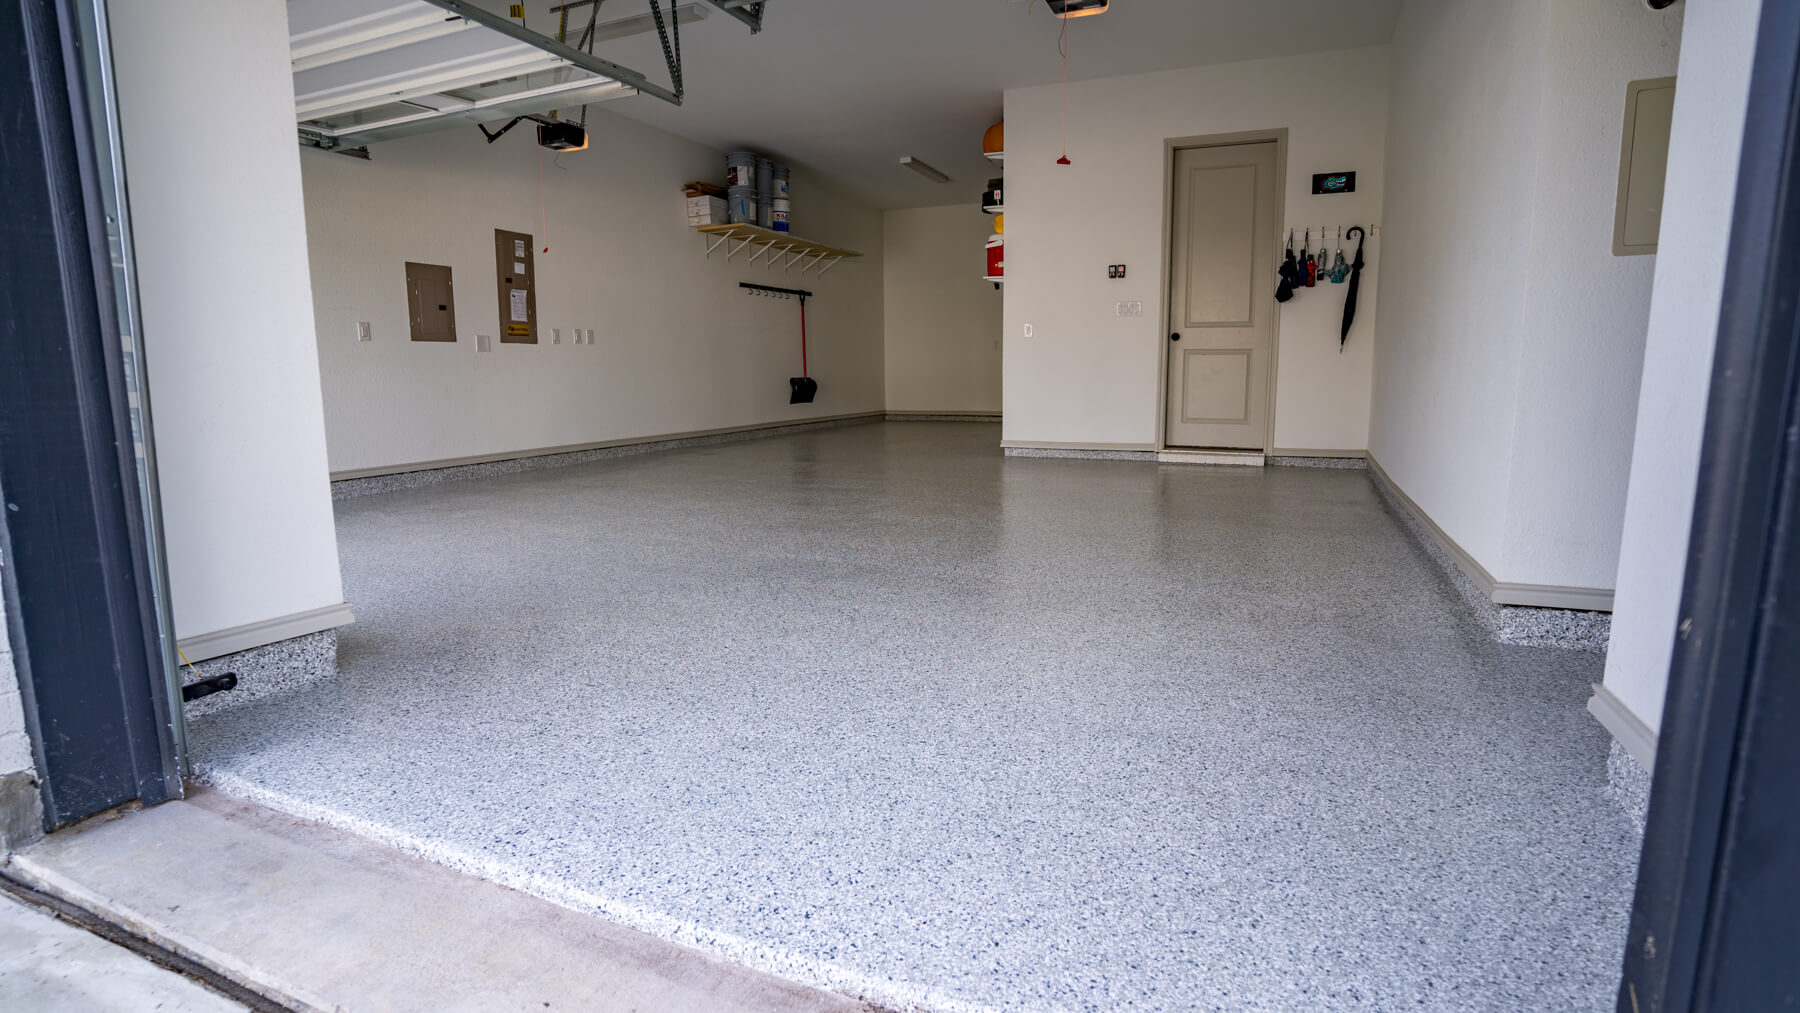 Garage Floor Coating in One Day - Garage Floor Coating Cost - Garage Floor Coating Cost